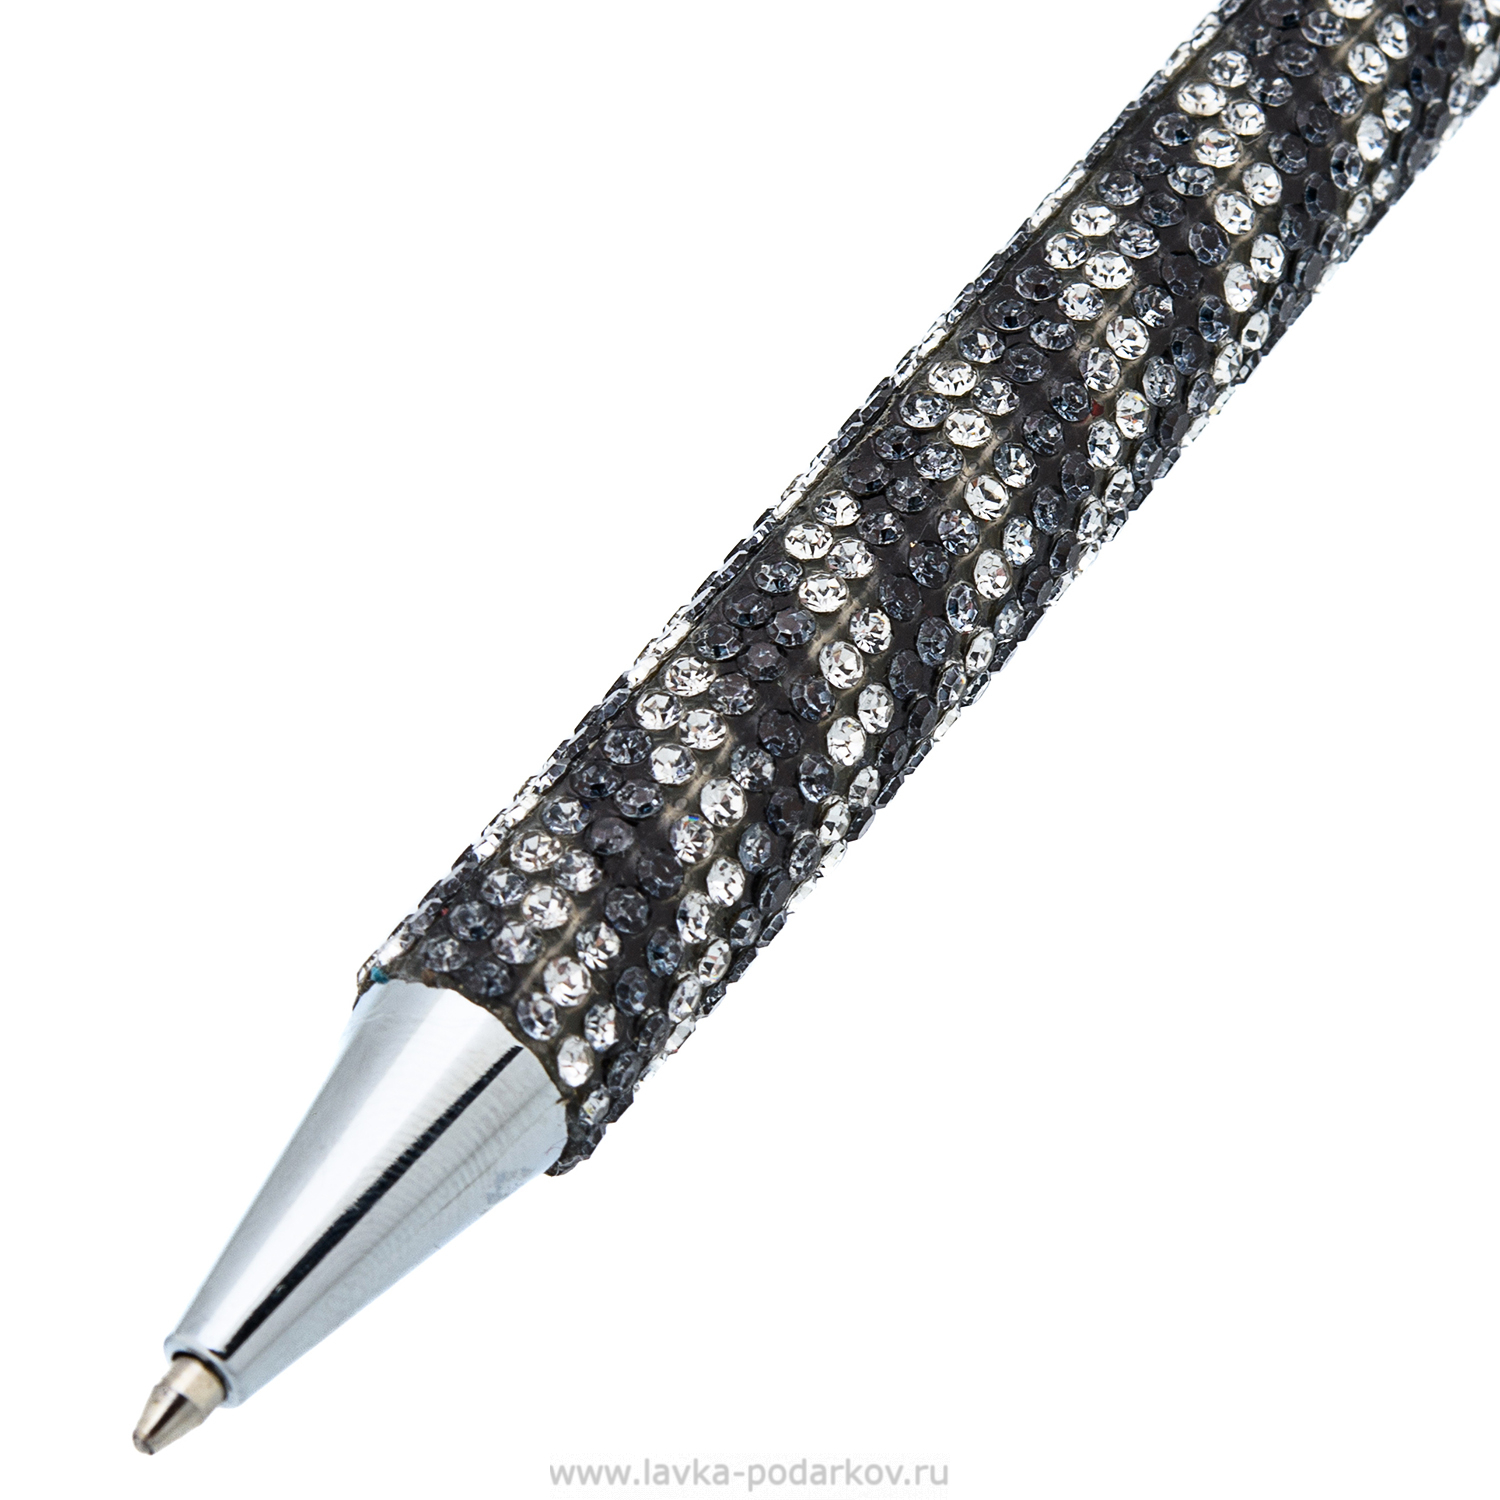 Народные приметы о ручках, ✏️ карандашах | 15 суеверий